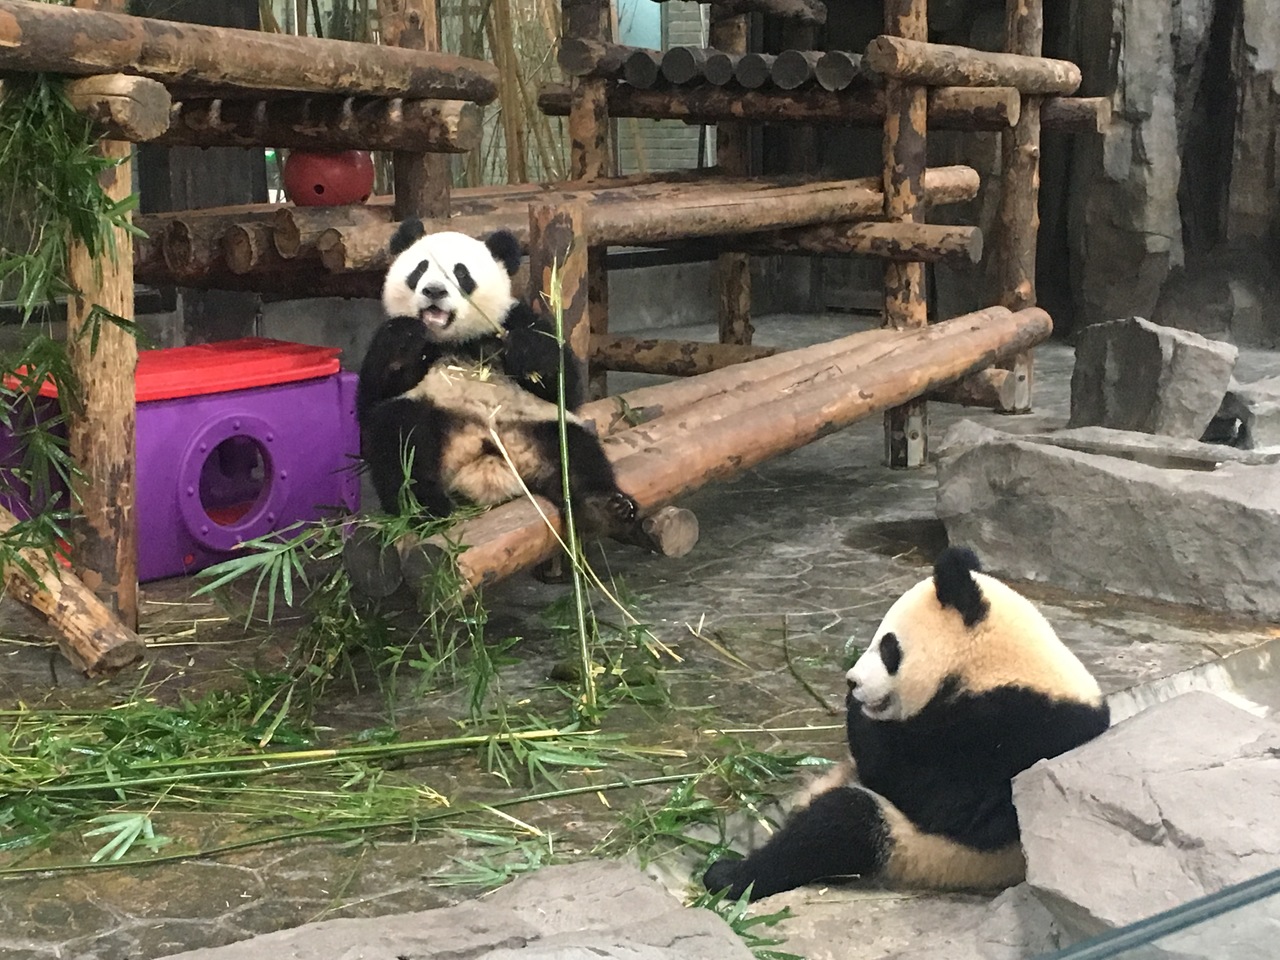 19ジャイアントパンダ鑑賞記録 はじめての海外完全一人旅 上海野生動物園へ行ってきました１ 上海 中国 の旅行記 ブログ By Yayoさん フォートラベル